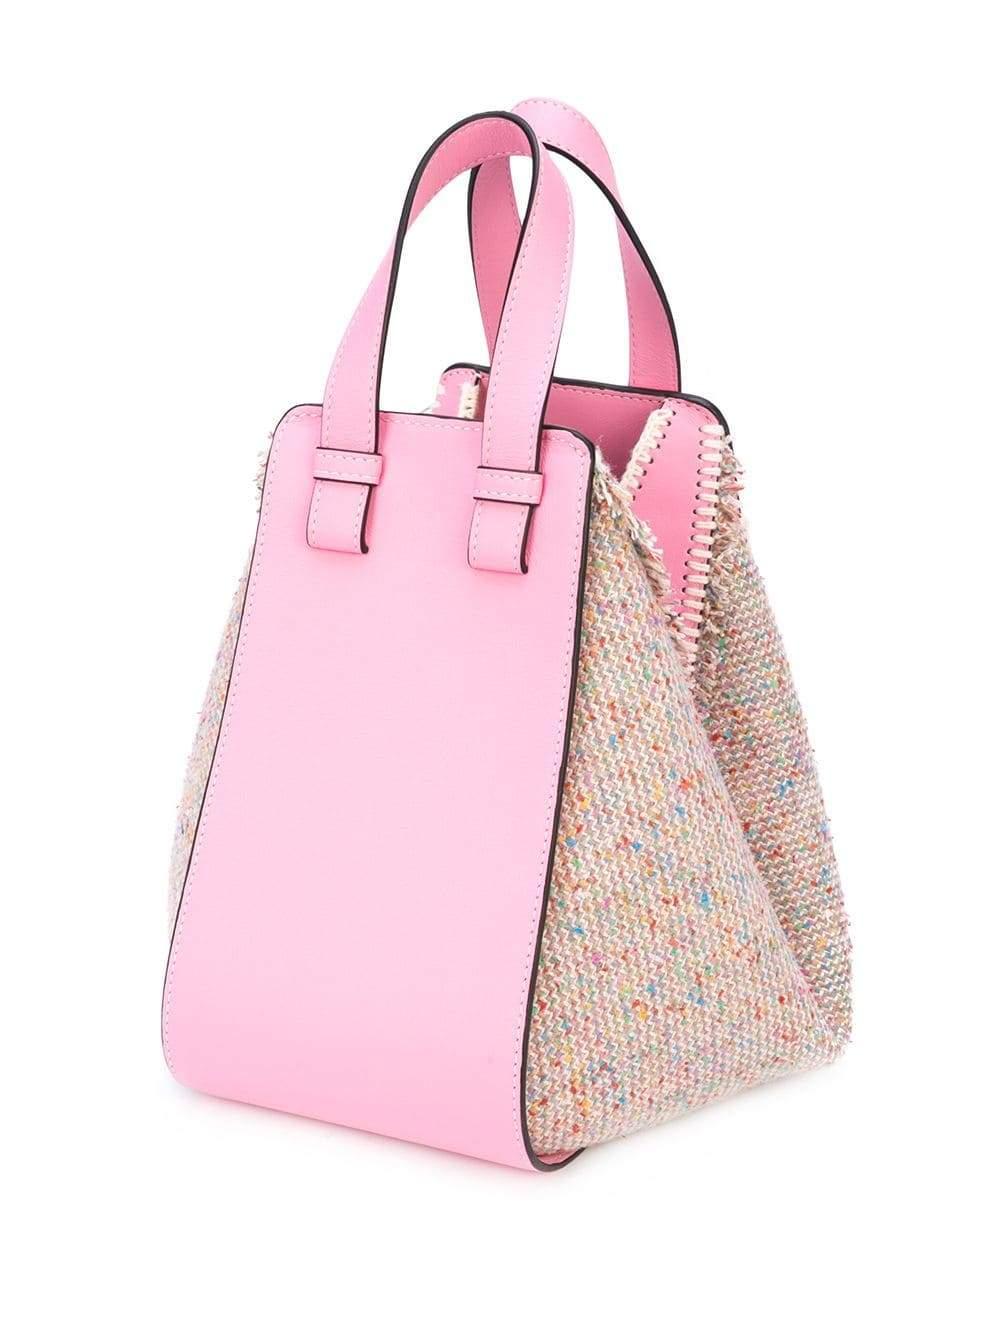 Loewe Small Hammock Leather & Tweed Shoulder Bag in Pink - Lyst